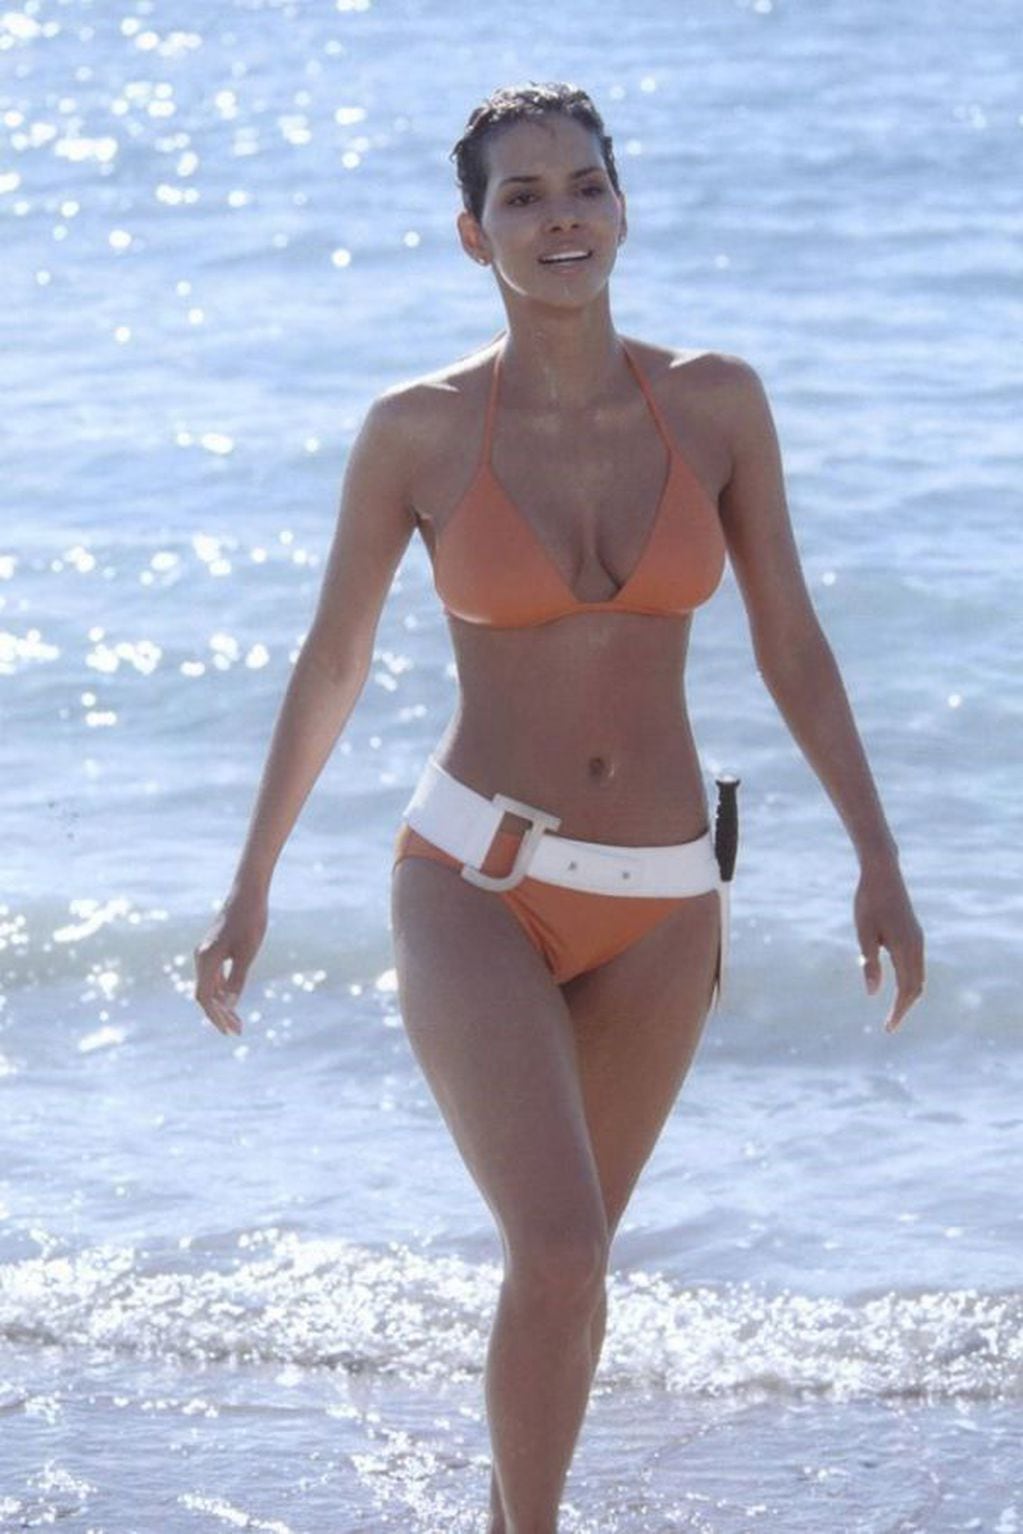 Lencería en la playa? Halle Berry sorprende al disfrutar del mar con una  “bikini” de encaje